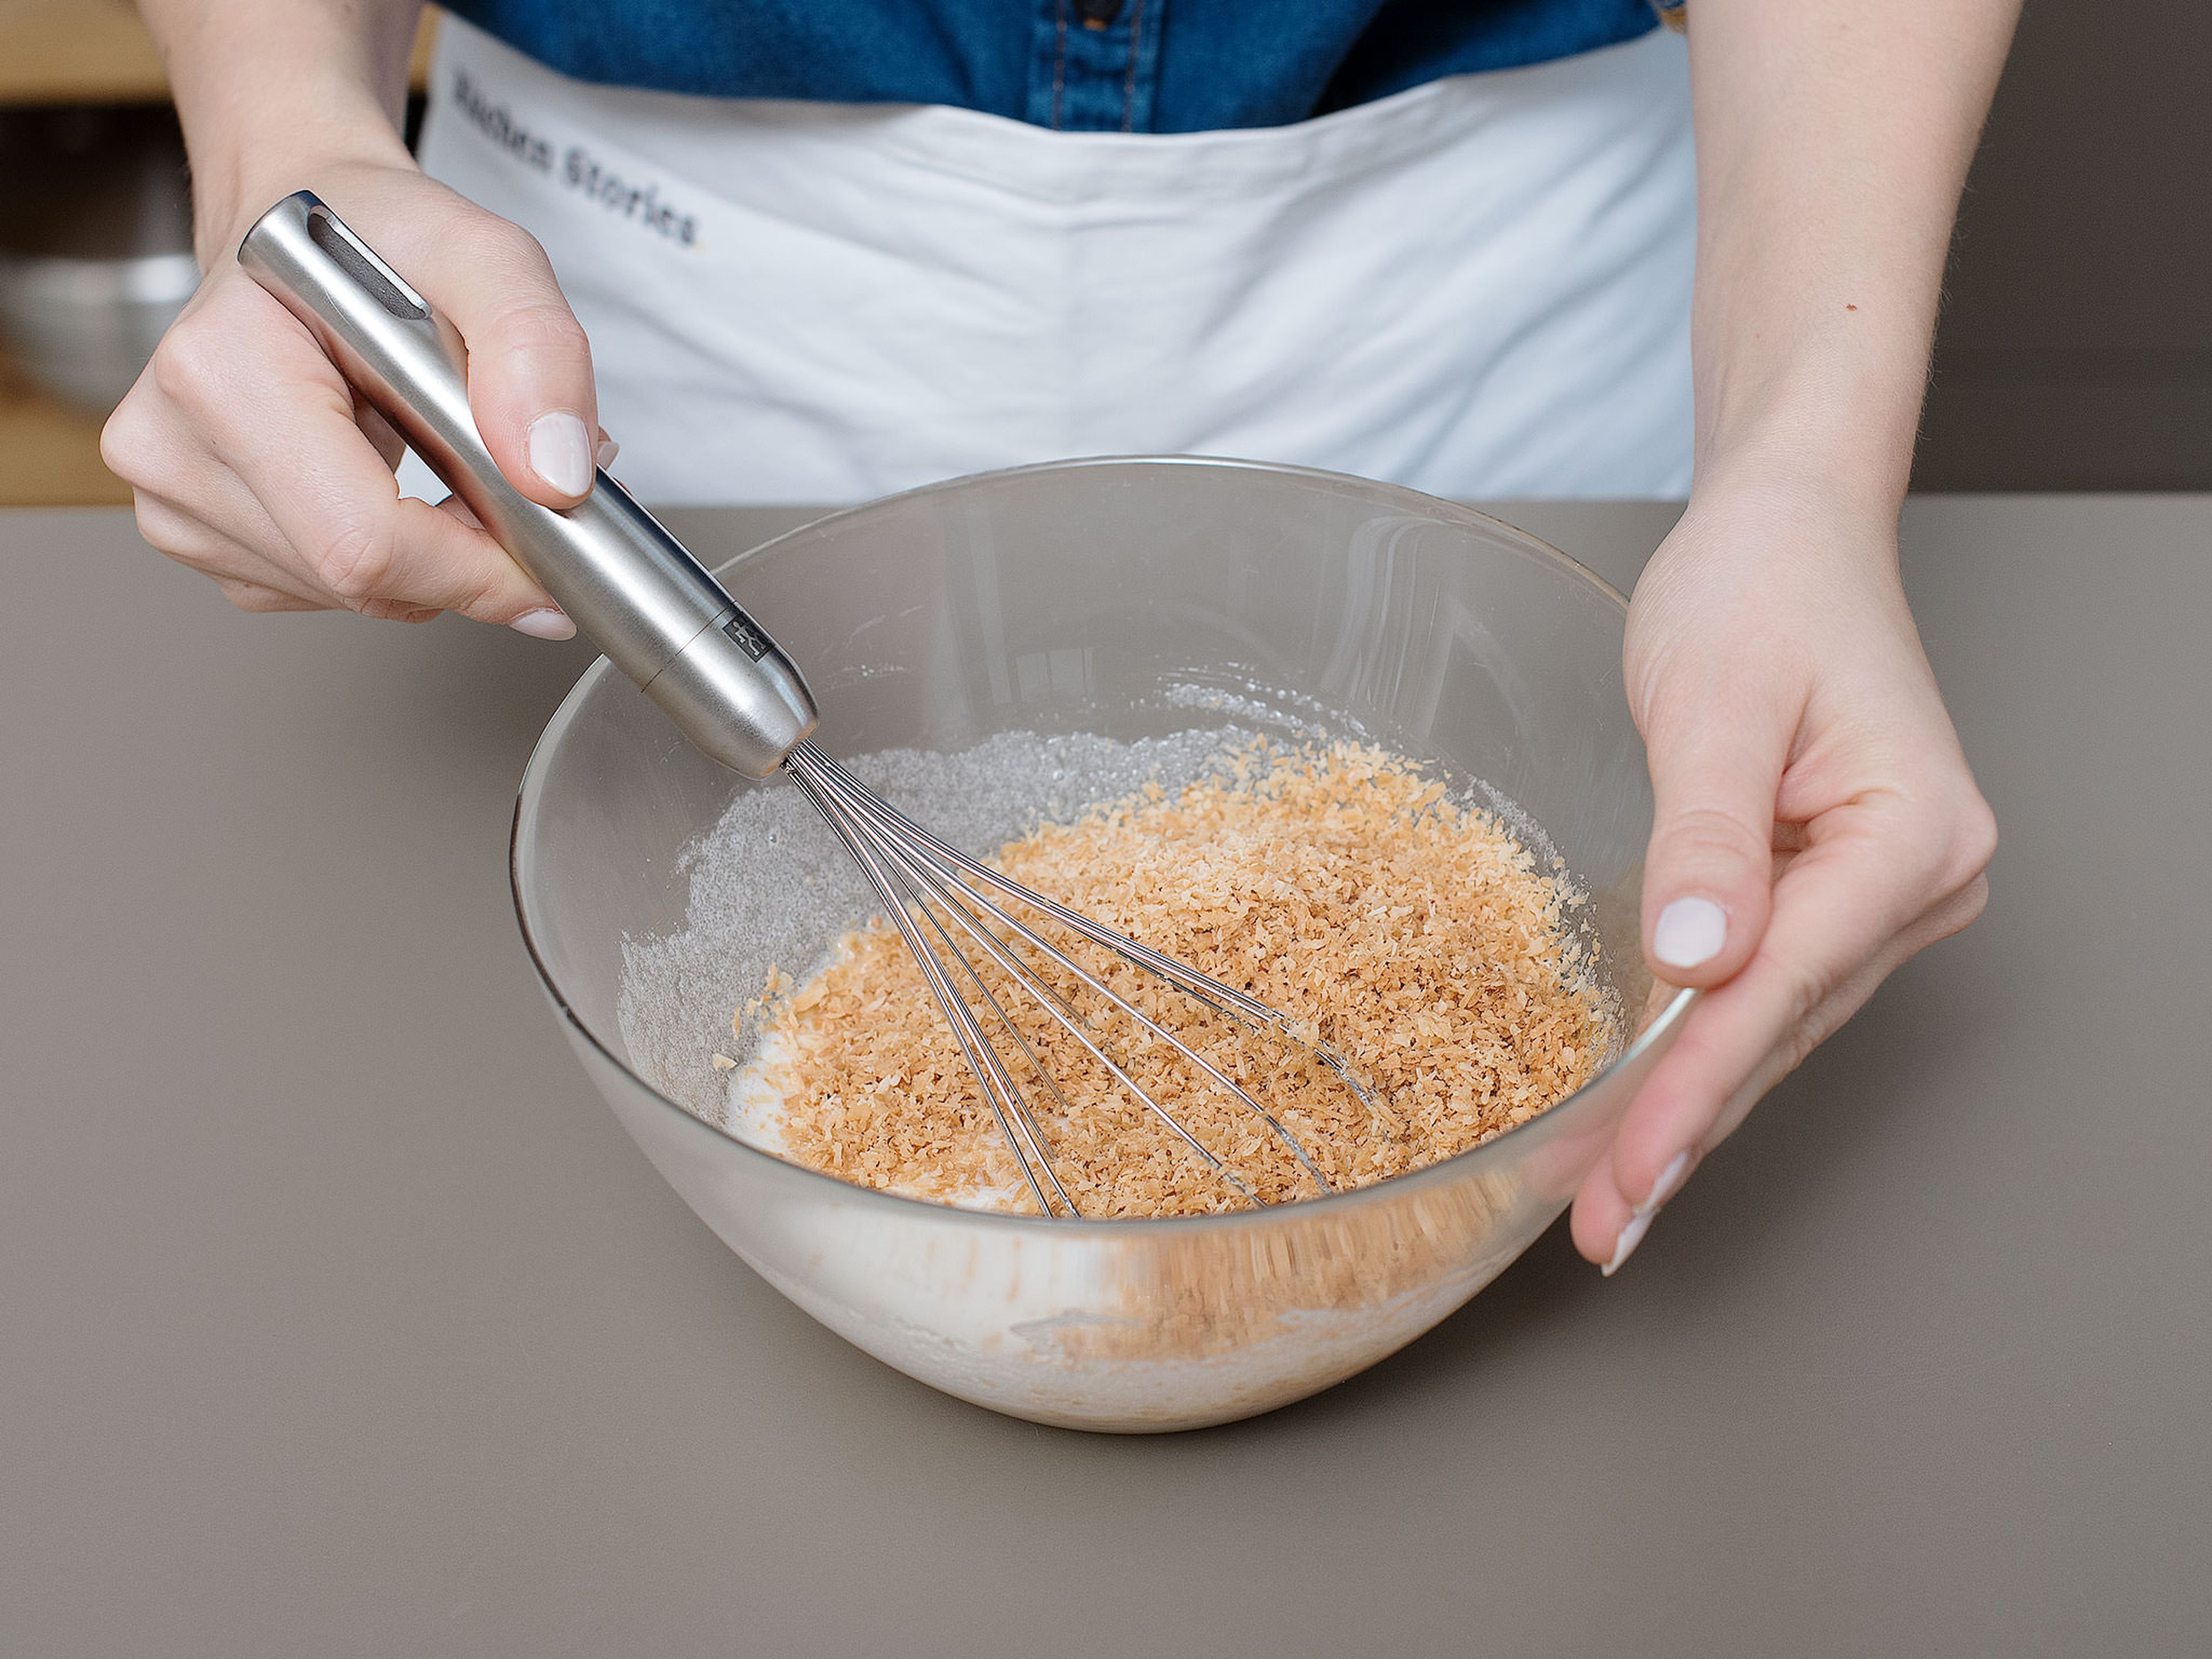 In einer großen Schüssel Eiweiße, Zucker, Vanilleextrakt und Salz aufschlagen. Geröstete Kokosraspel zugeben und verrühren. Die Schüssel mit Frischhaltefolie bedecken und für ca. 1 Std. kalt stellen.